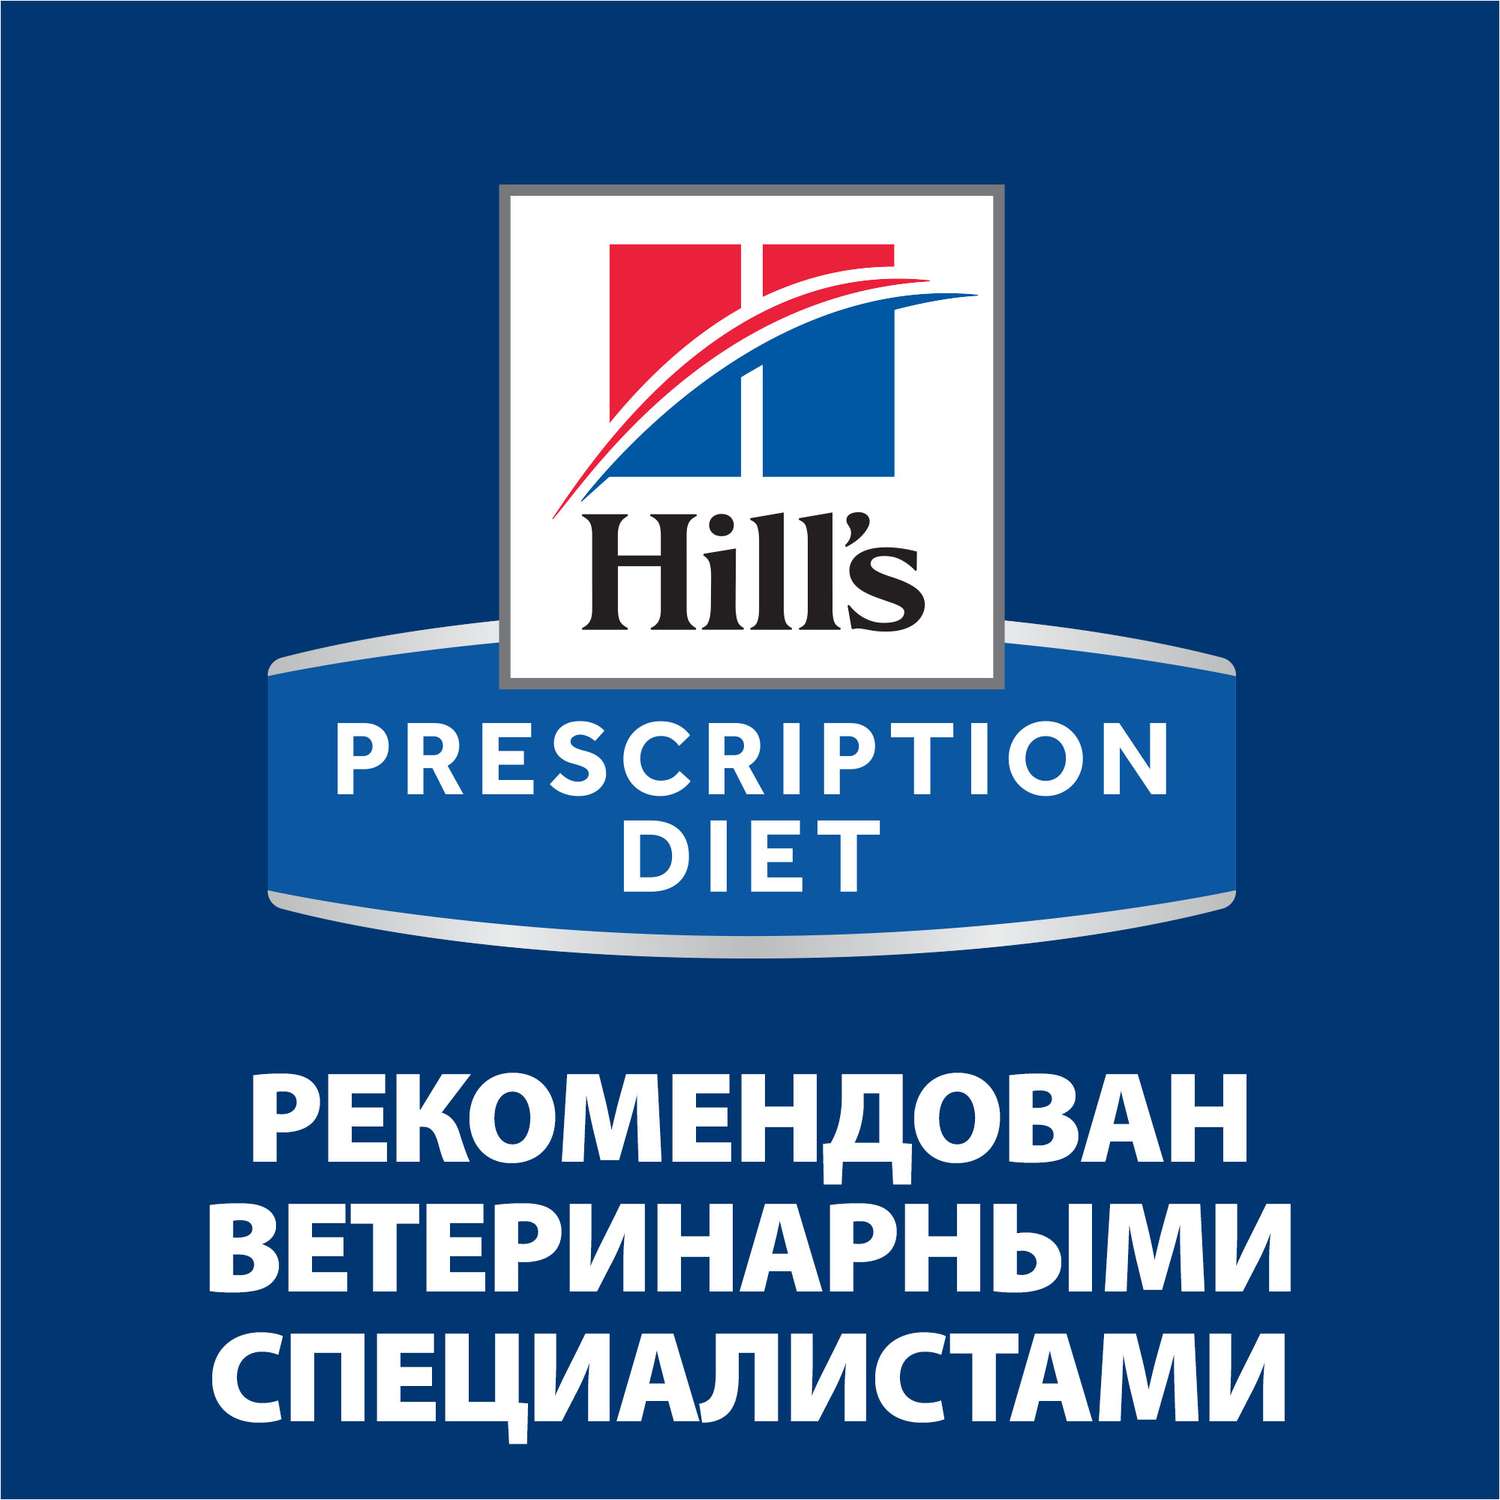 Корм для кошек Hills 3кг Prescription Diet s/d Urinary Care диетический при профилактике мочекаменной болезни (мкб) - фото 9